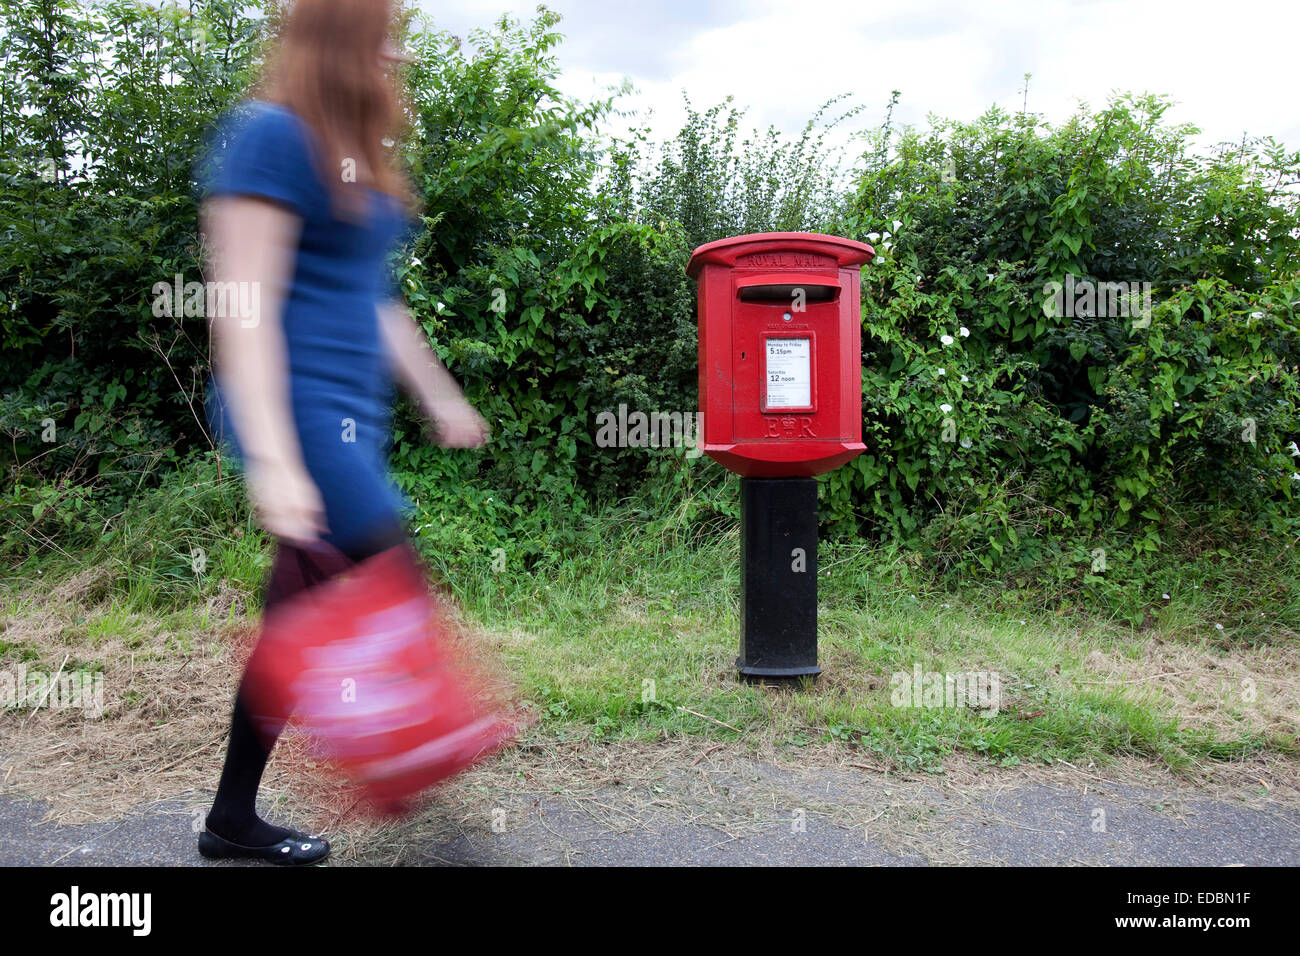 Image d'illustration d'un Royal Mail Post Box. Banque D'Images